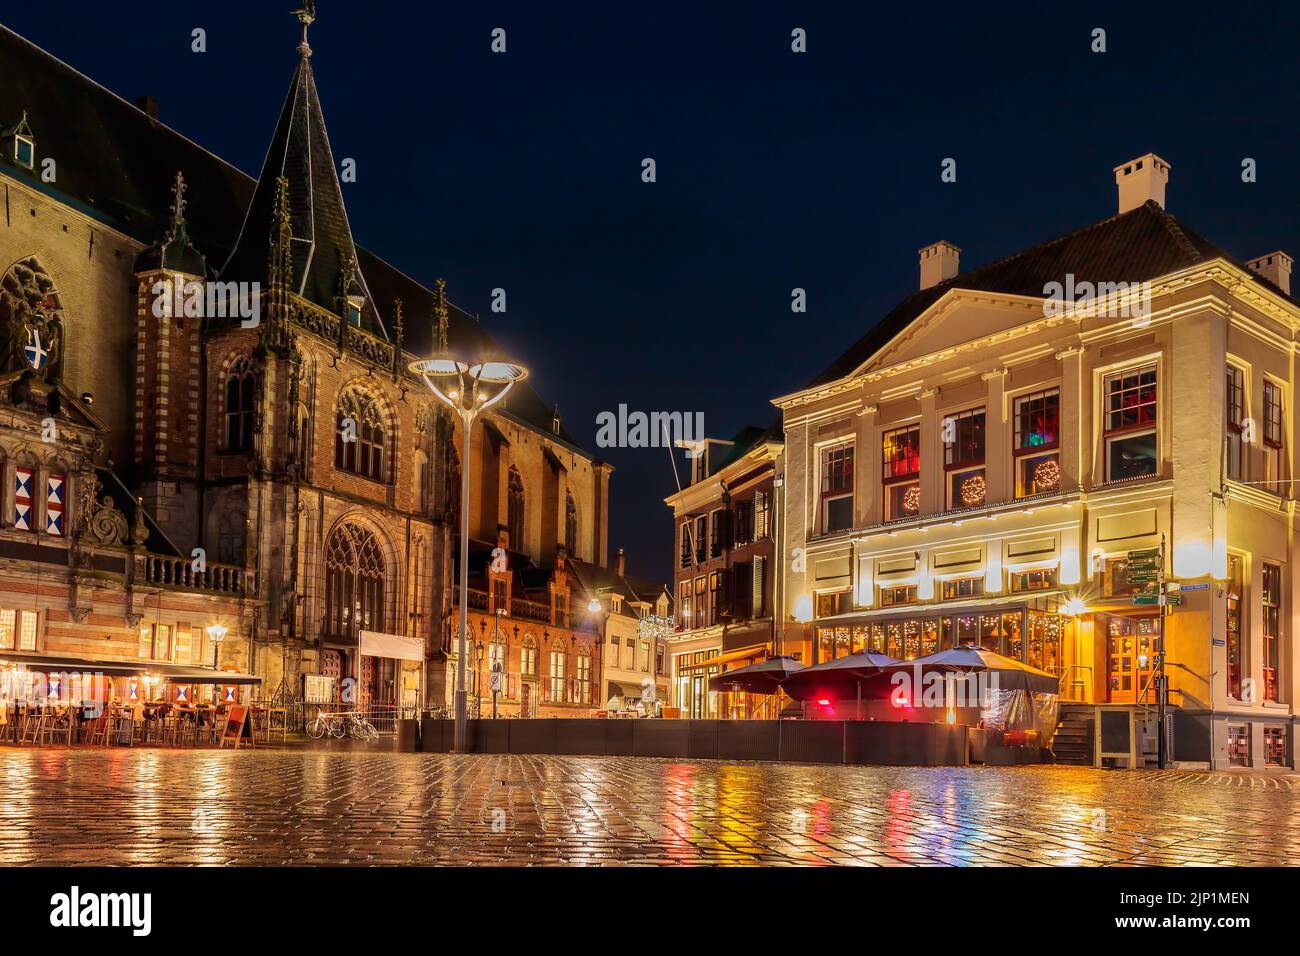 Vista nocturna de la plaza central holandesa en la ciudad de Zwolle en diciembre Foto de stock